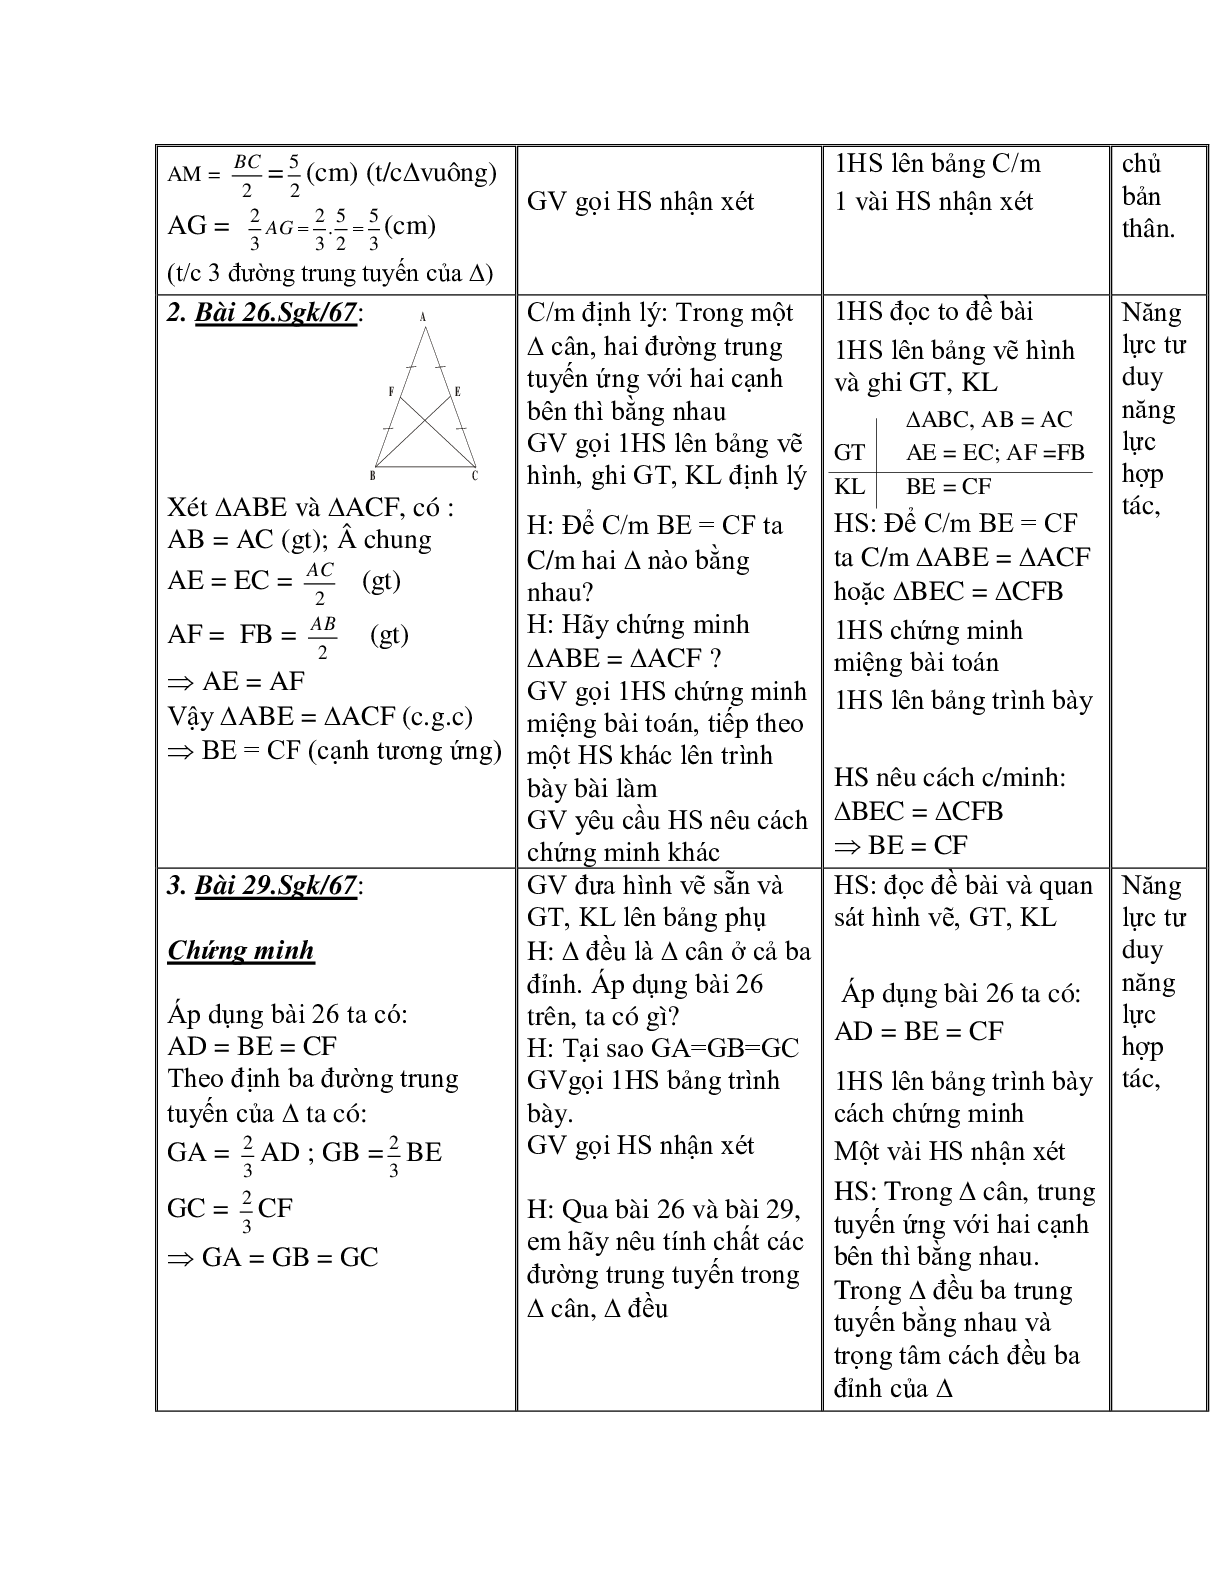 Giáo án Toán học 7 bài 4: Tính chất ba đường trung tuyến của tam giác chuẩn nhất (trang 8)